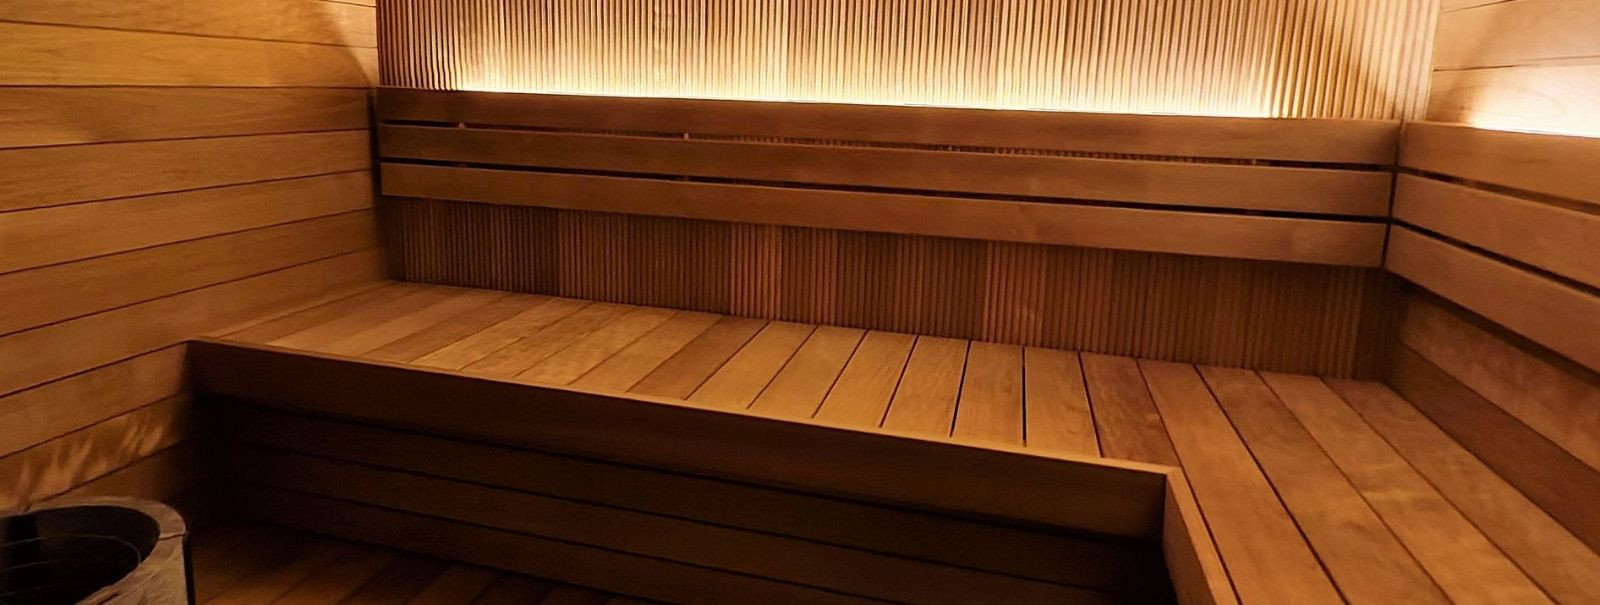 Tere tulemast SAUNAWOOD OÜ-sse, teie usaldusväärsele partnerile kvaliteetsete sauna- ja ehitusmaterjalide valdkonnas. Meie ettevõte on pühendunud sellele, et pa